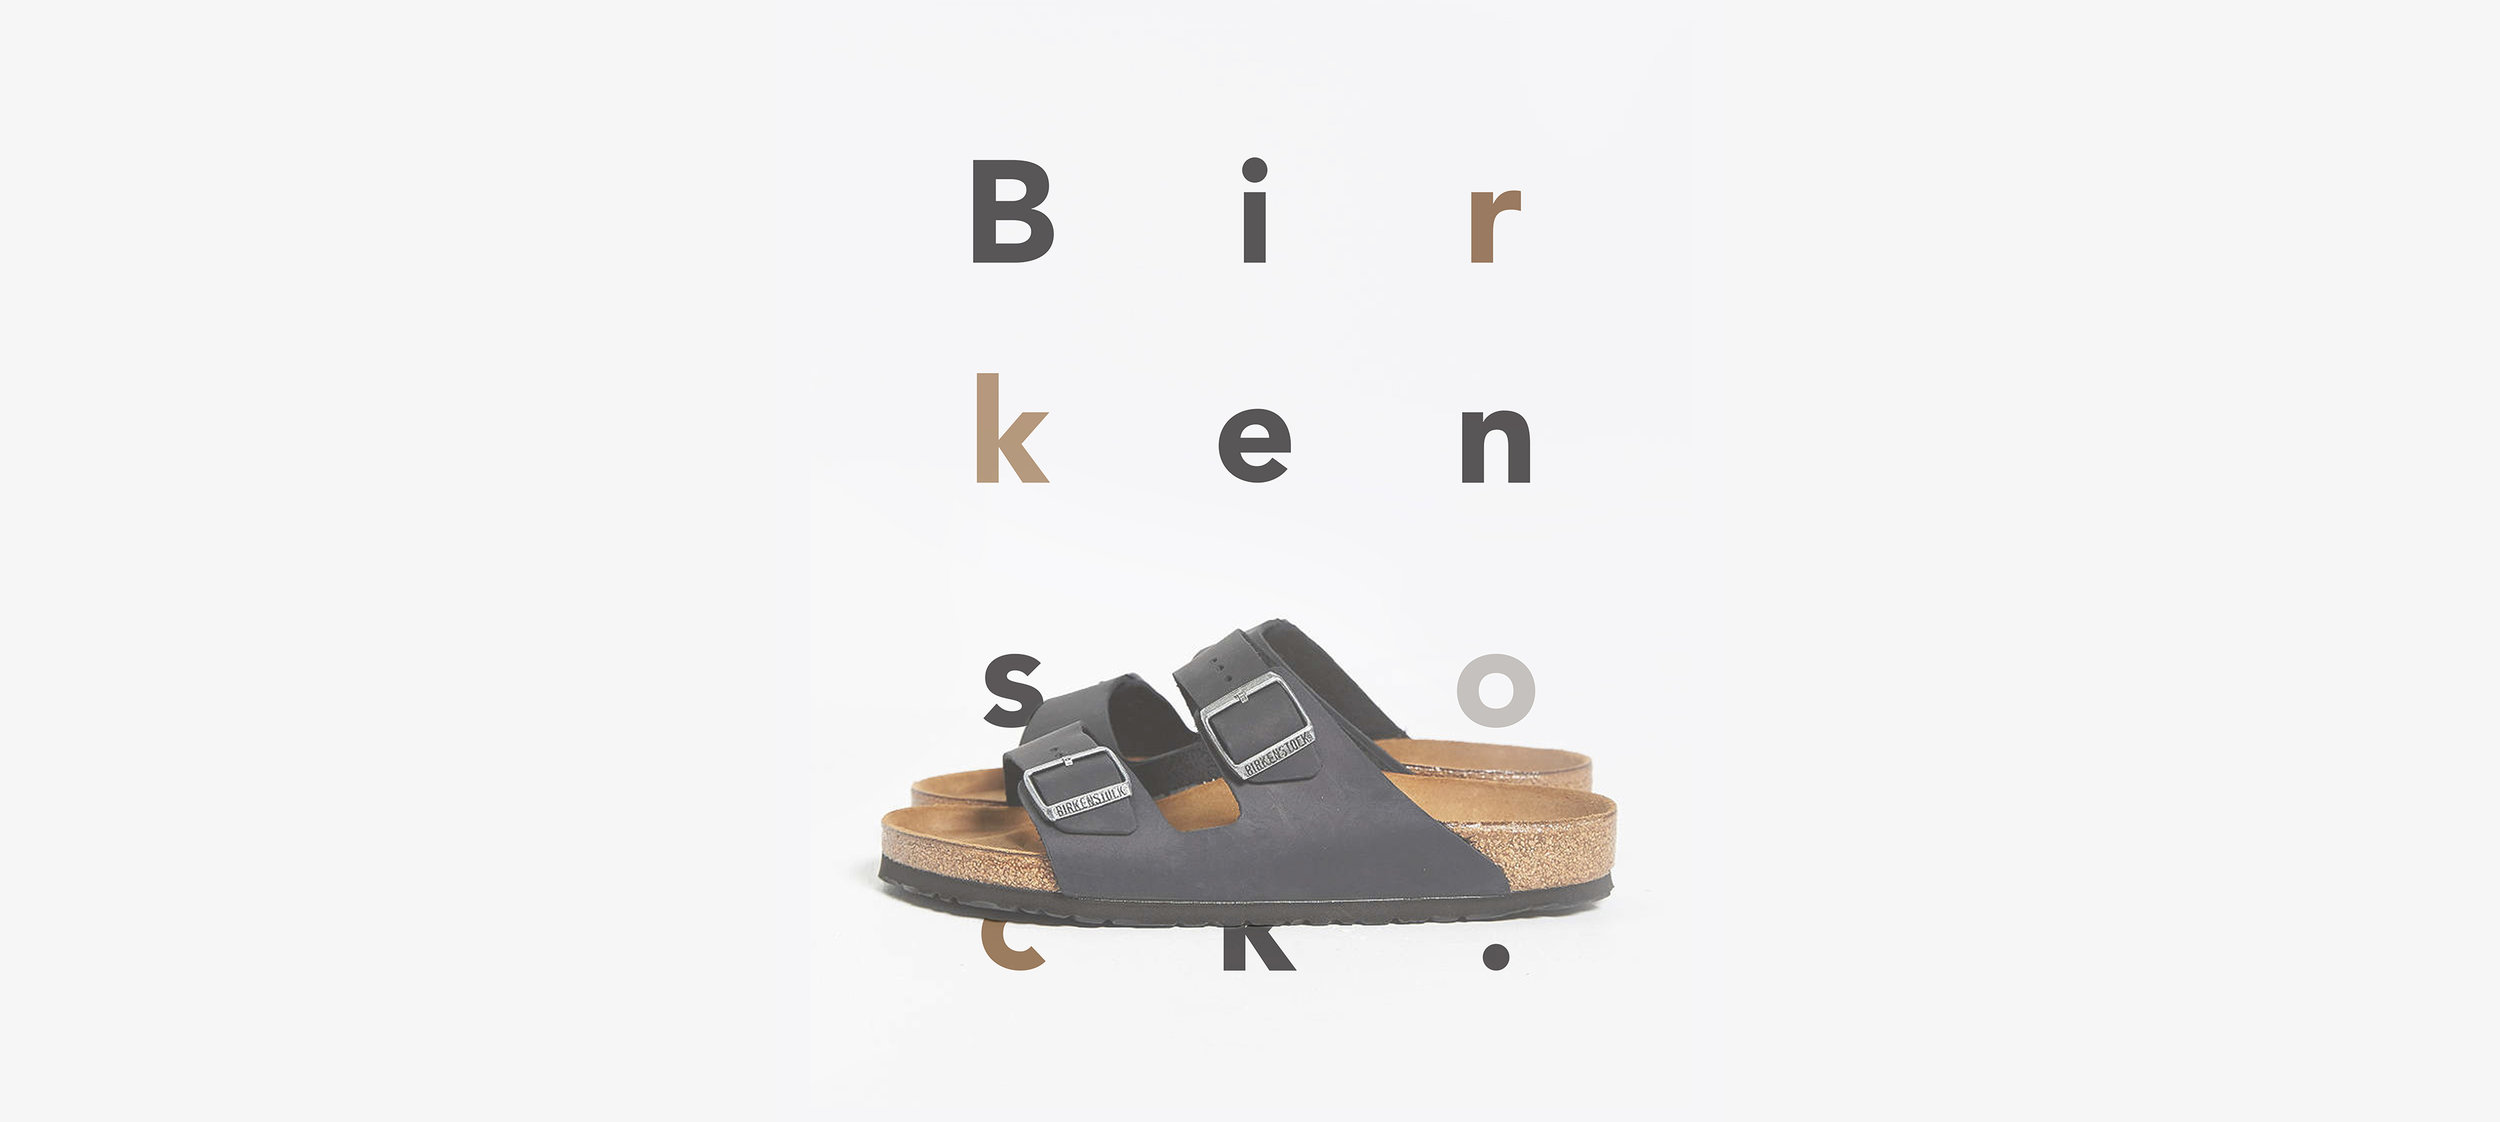 birkenstock brand